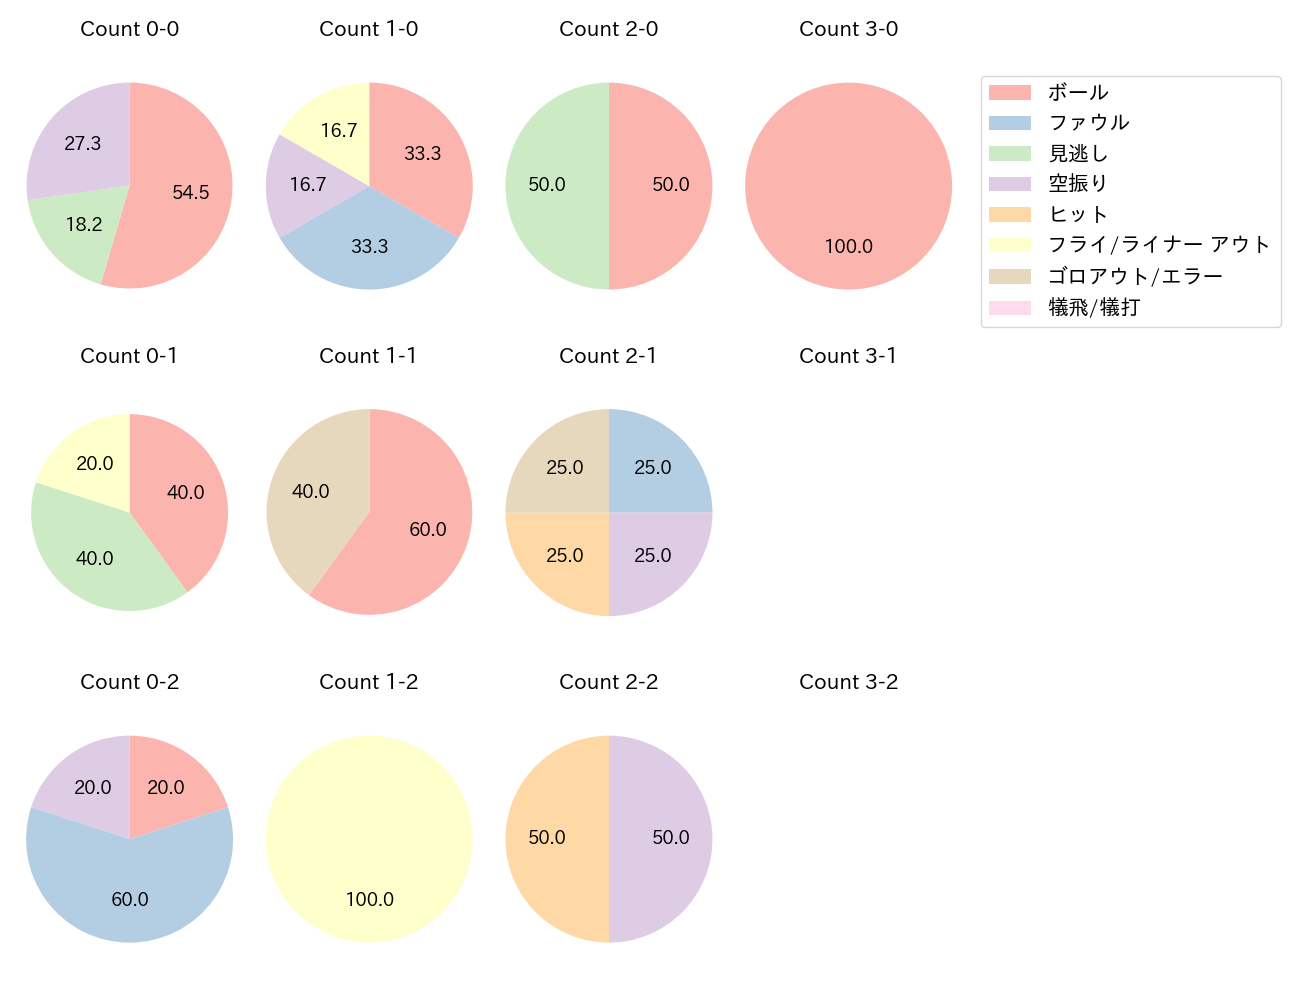 杉谷 拳士の球数分布(2022年5月)